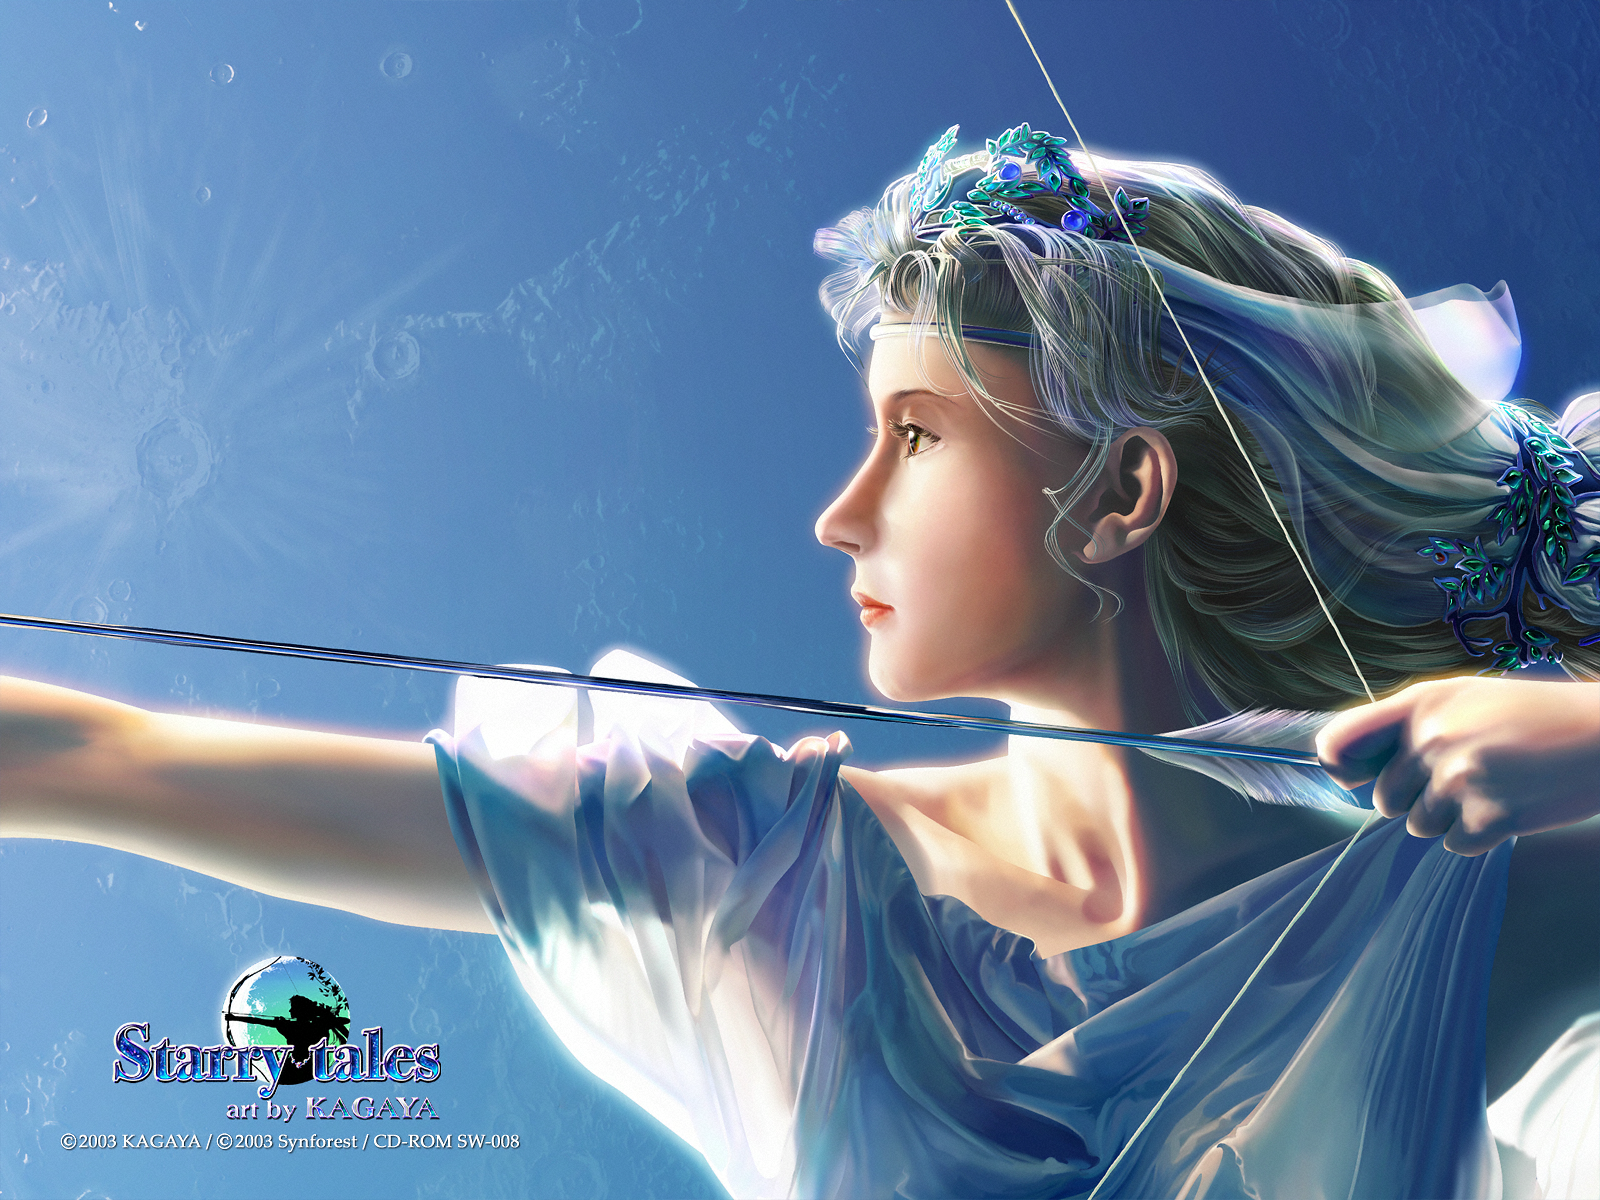 ... Art by KAGAYA Starry Tales Artemis 3